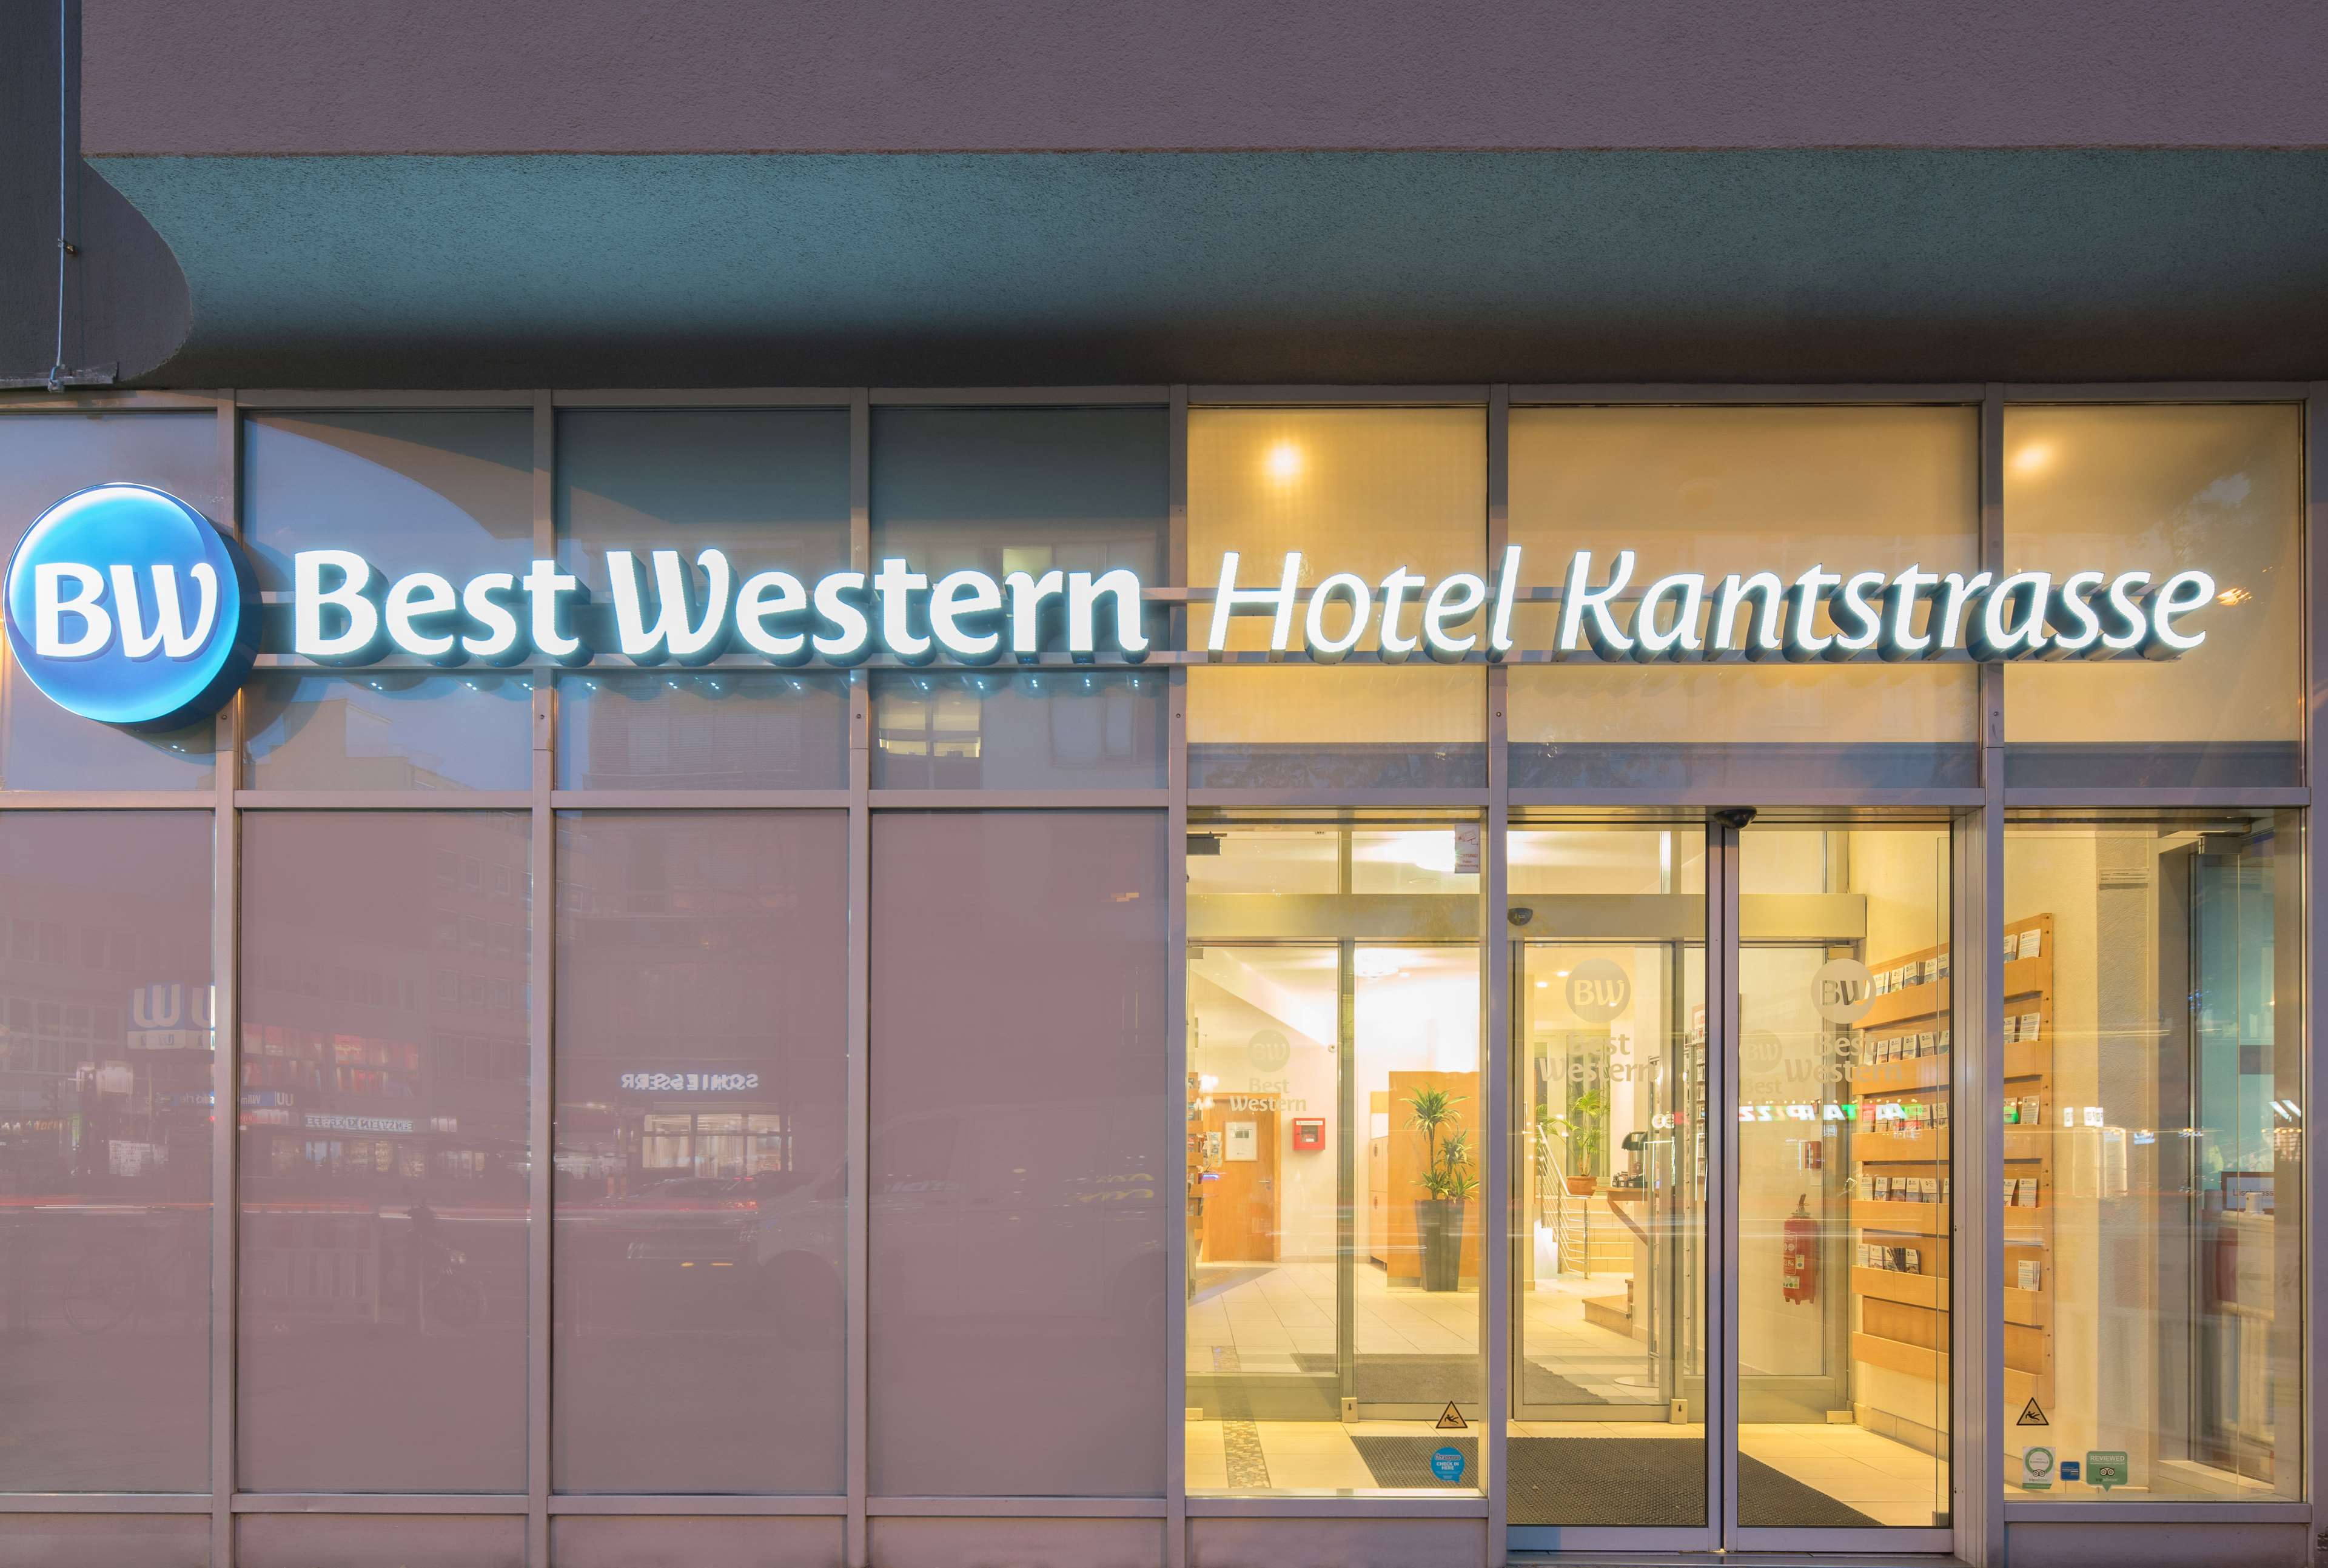 Best Western Hotel Kantstrasse Berlin, Kantstrasse 111 in Berlin